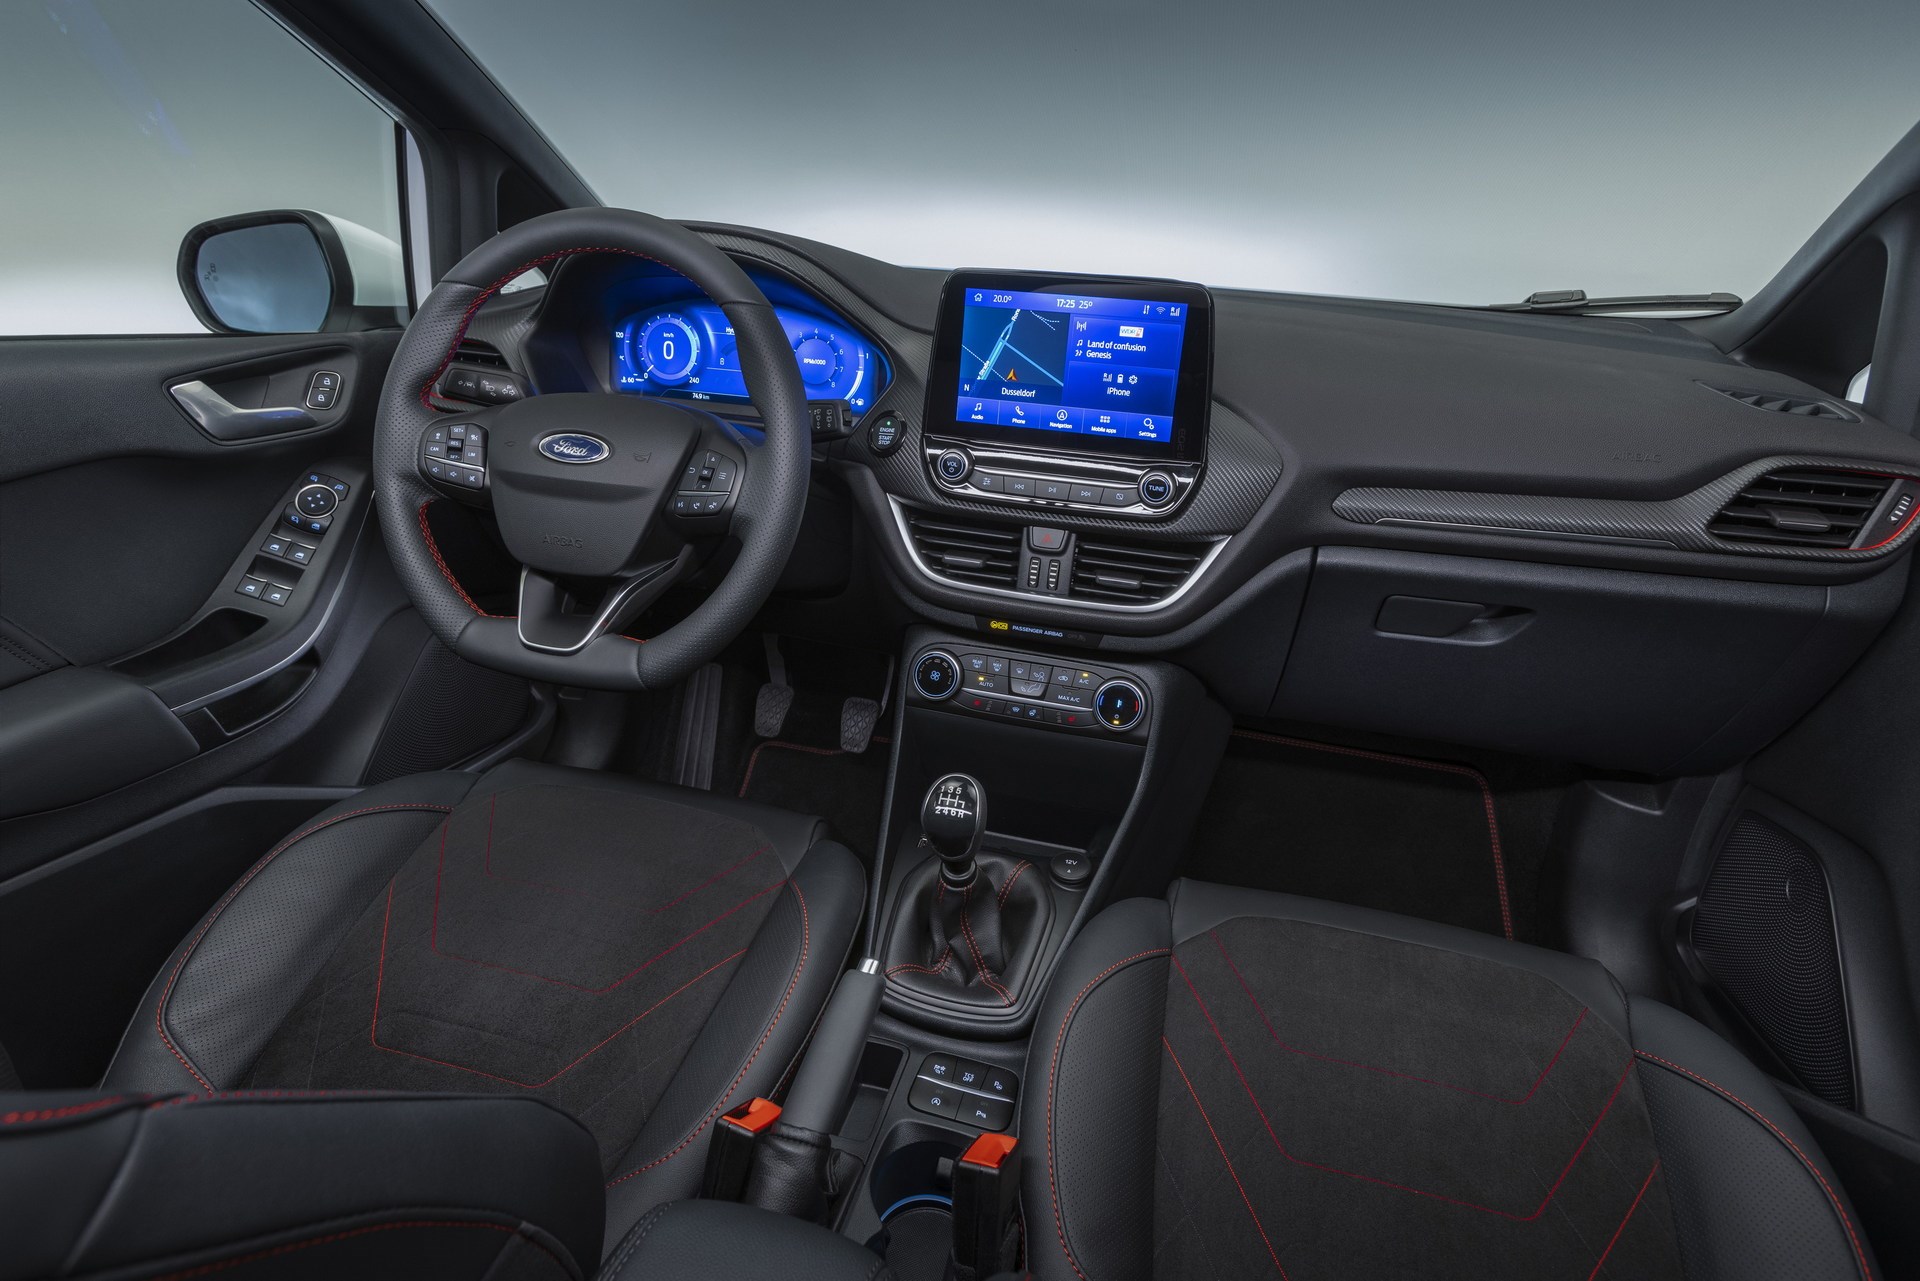 Yeni 2022 Ford Fiesta tanıtıldı: İşte tasarımı ve özellikleri